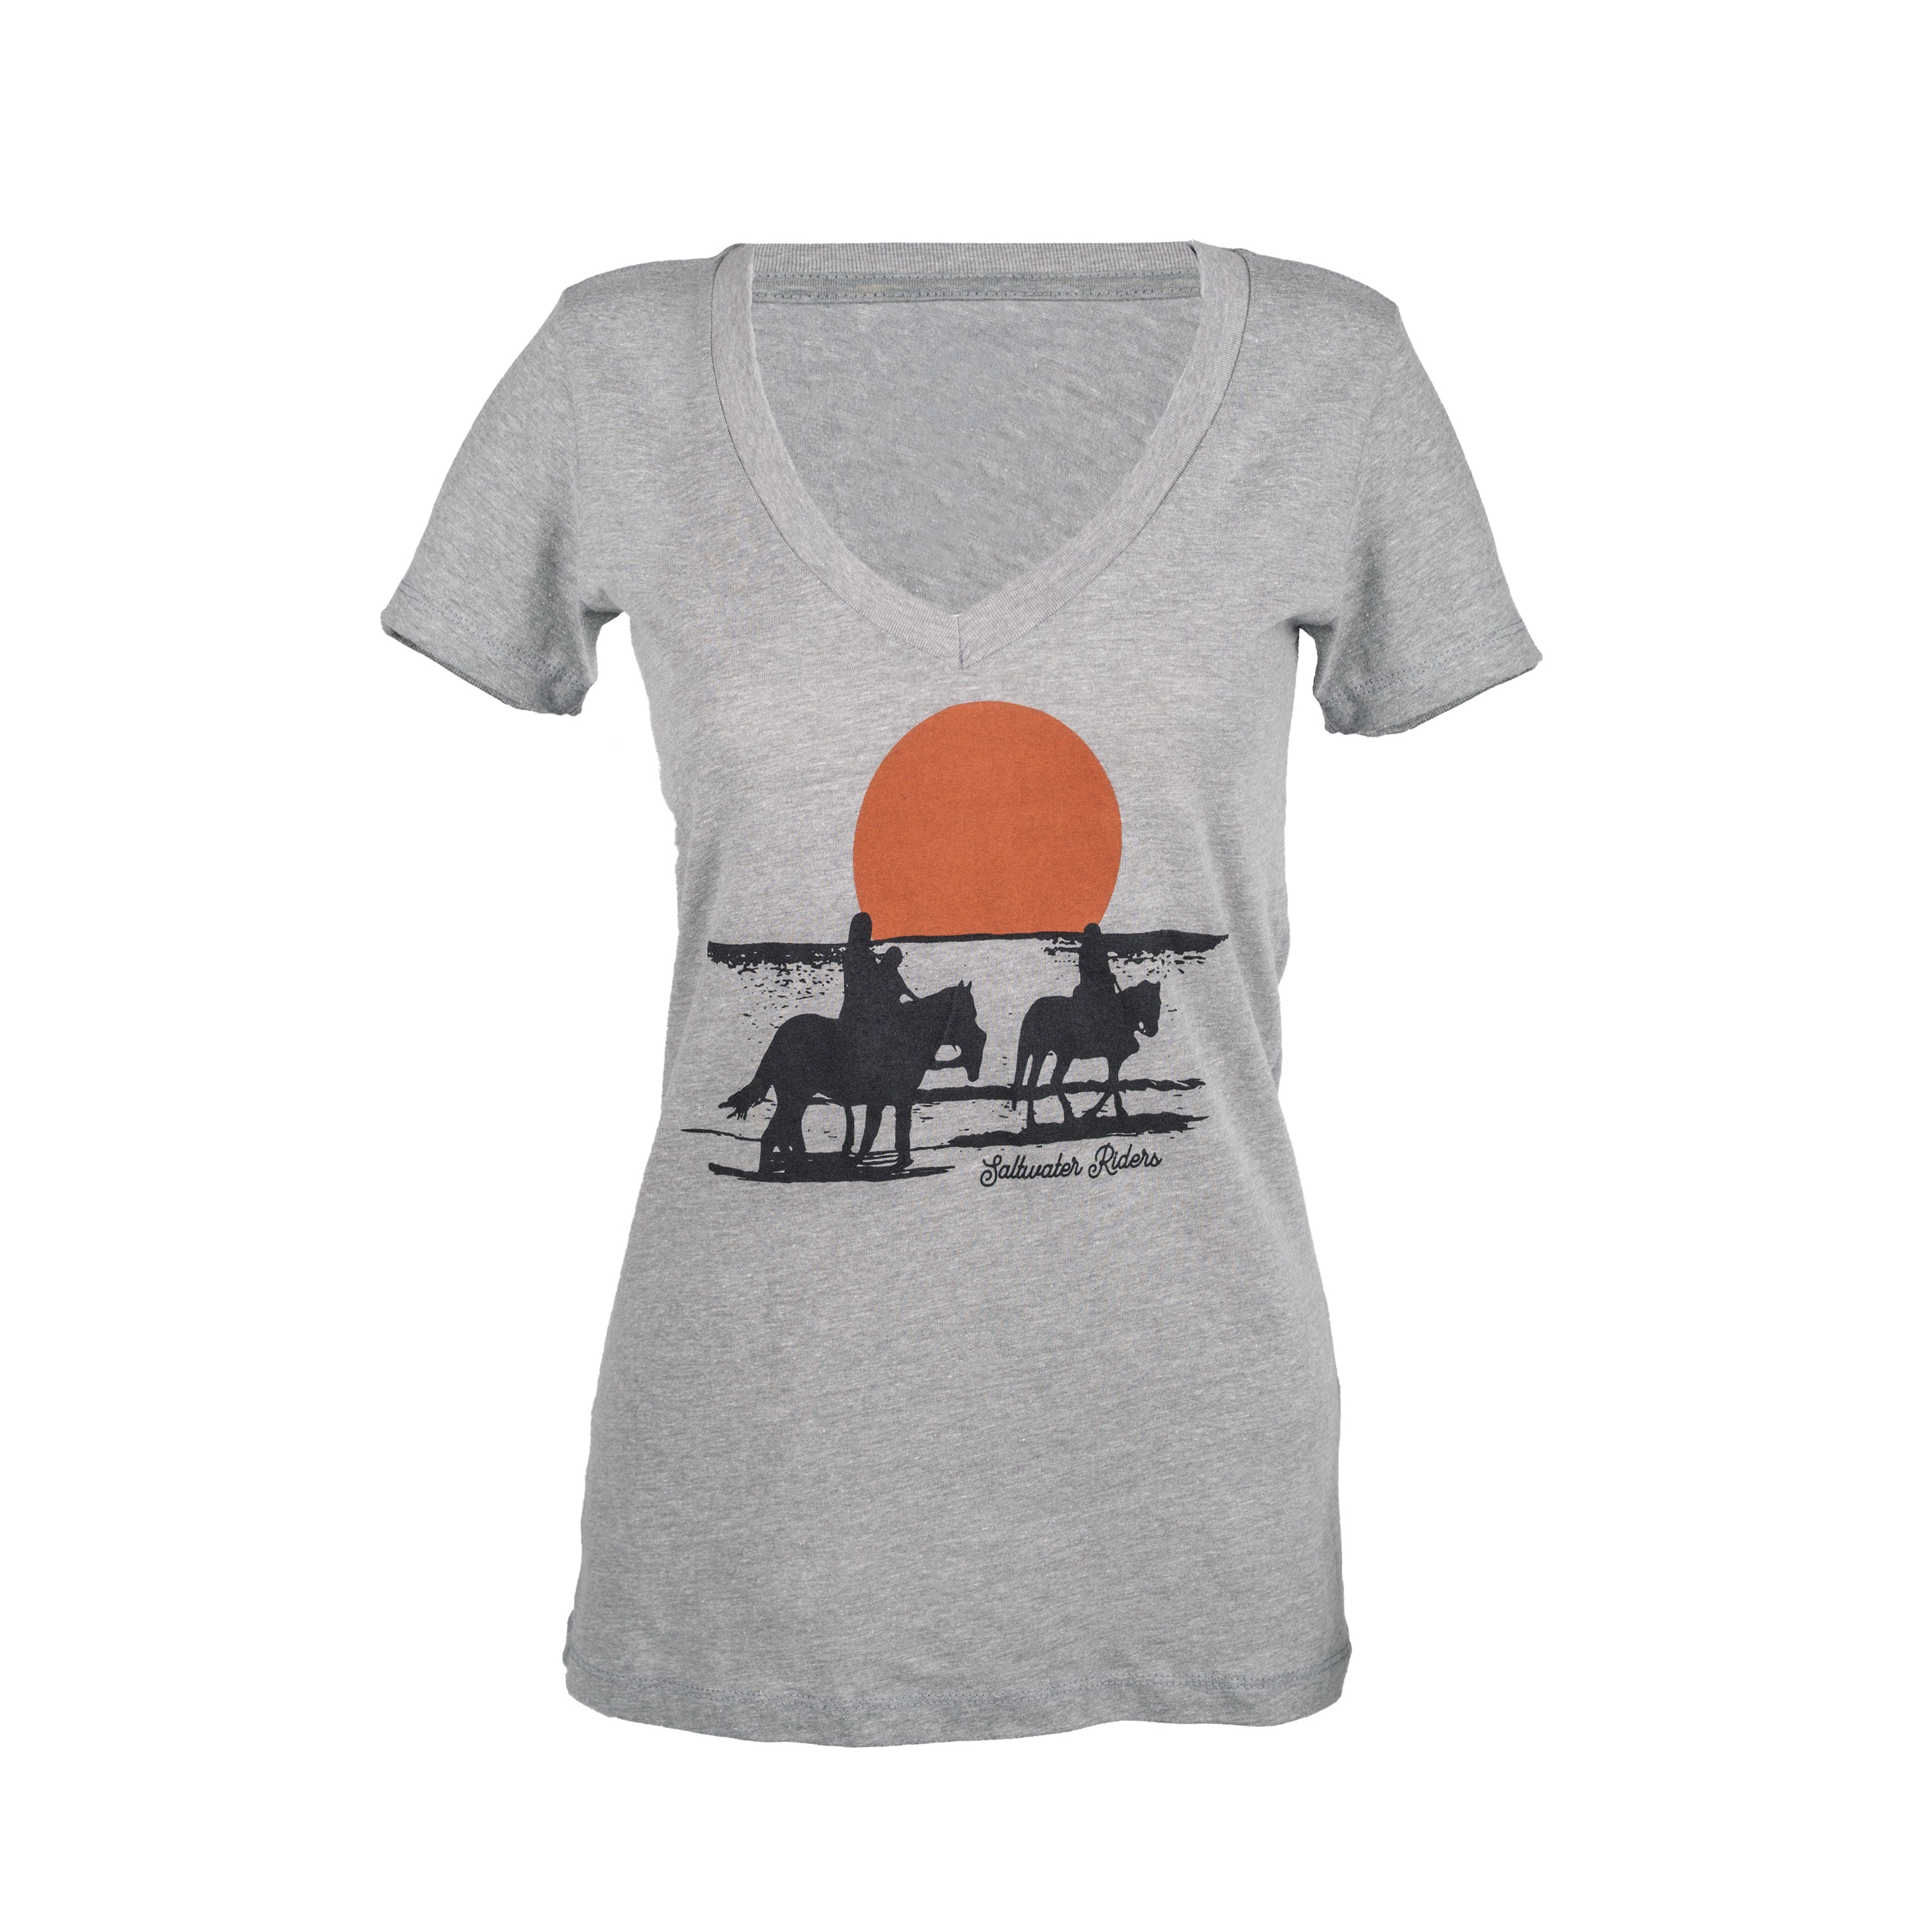 Womens Sunset Ride V-Neck Short Sleeve T-Shirt